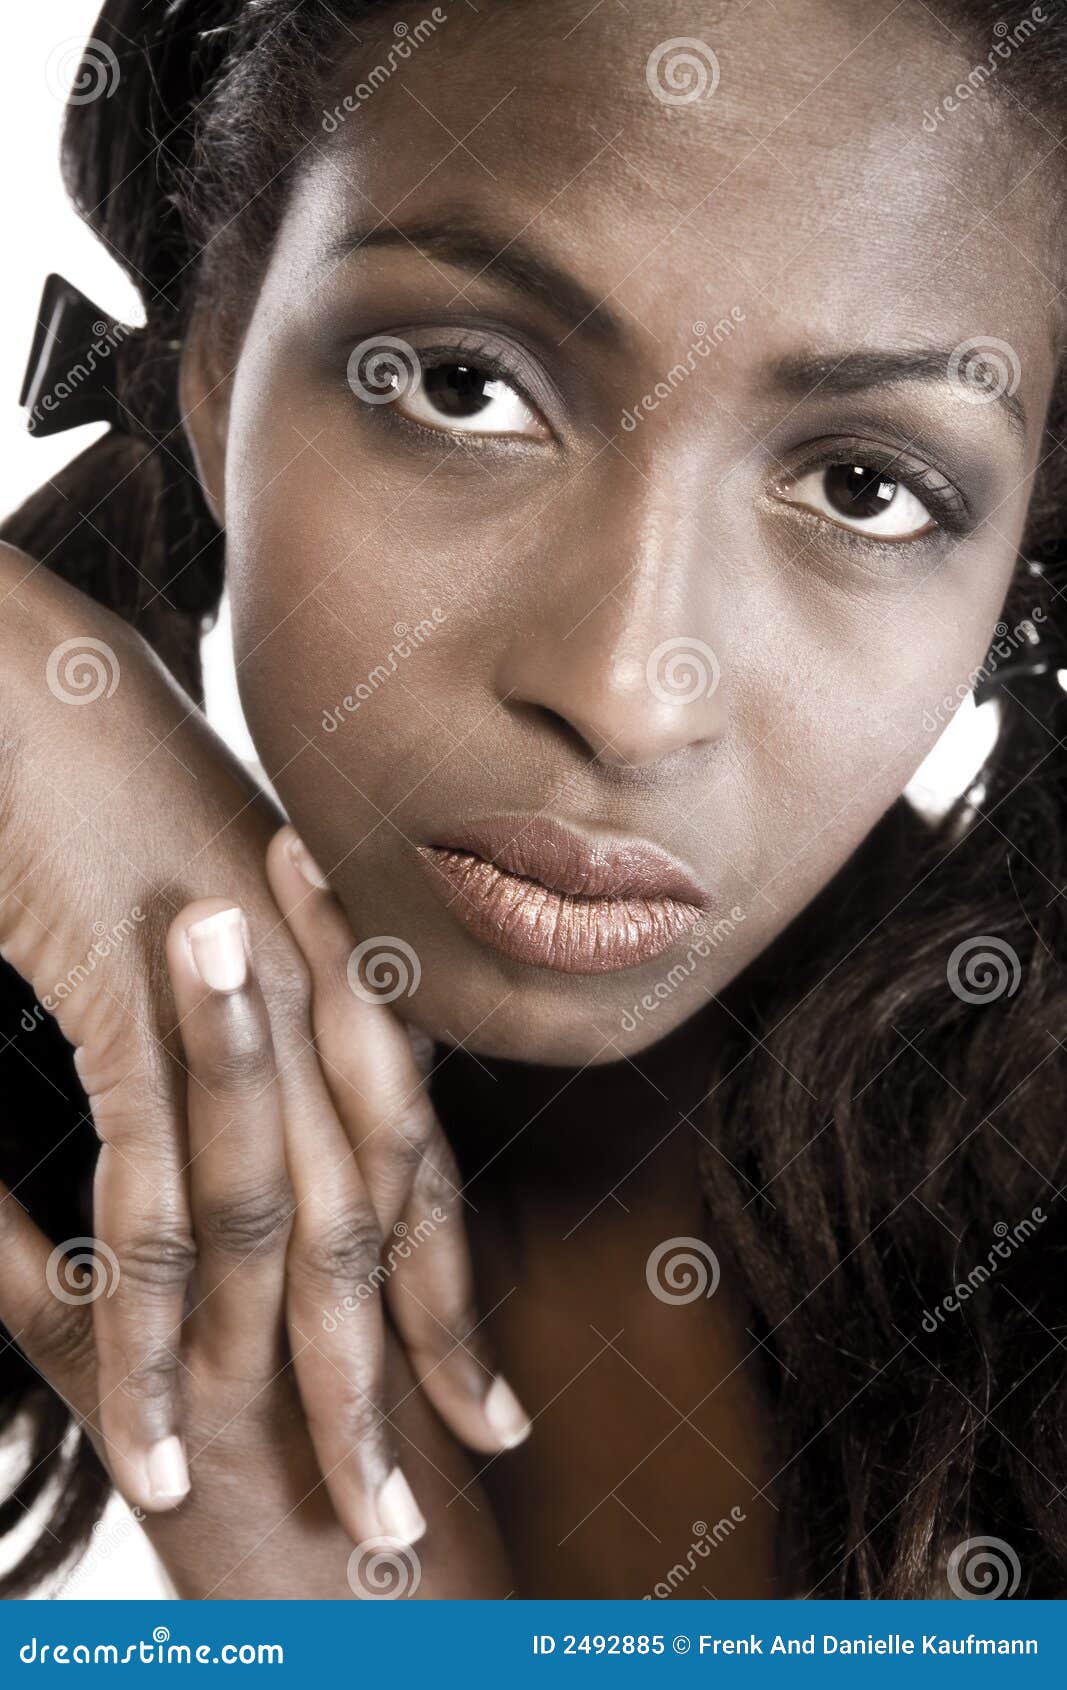 Mani e viso. Un ritratto di bellezza catturato da un modello africano nello studio